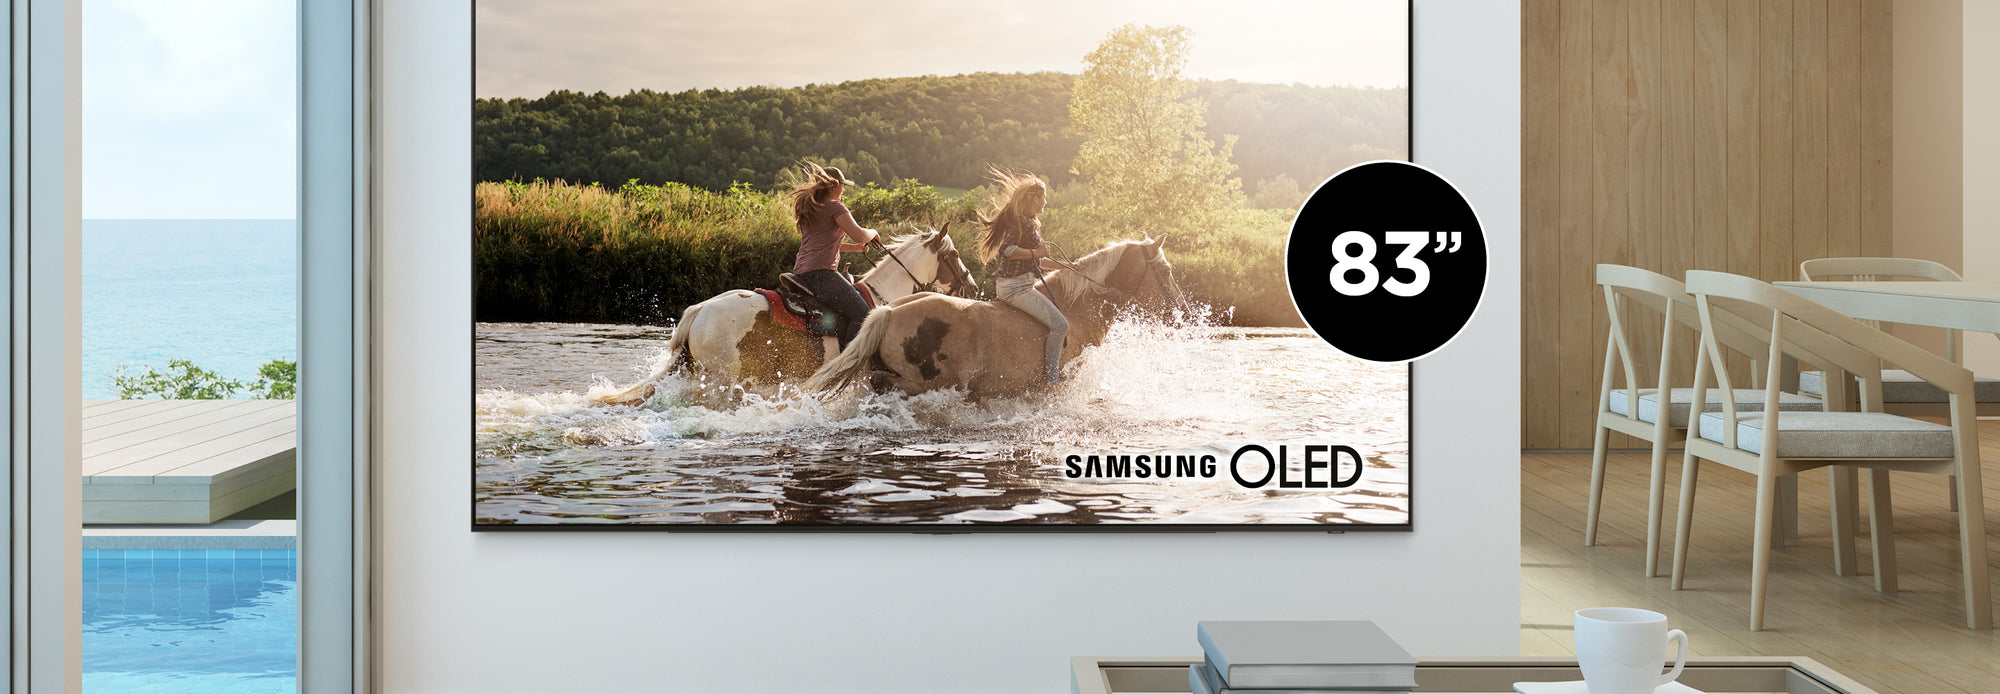 Nouveauté Samsung 83" OLED | SONXPLUS Val-de-Sources